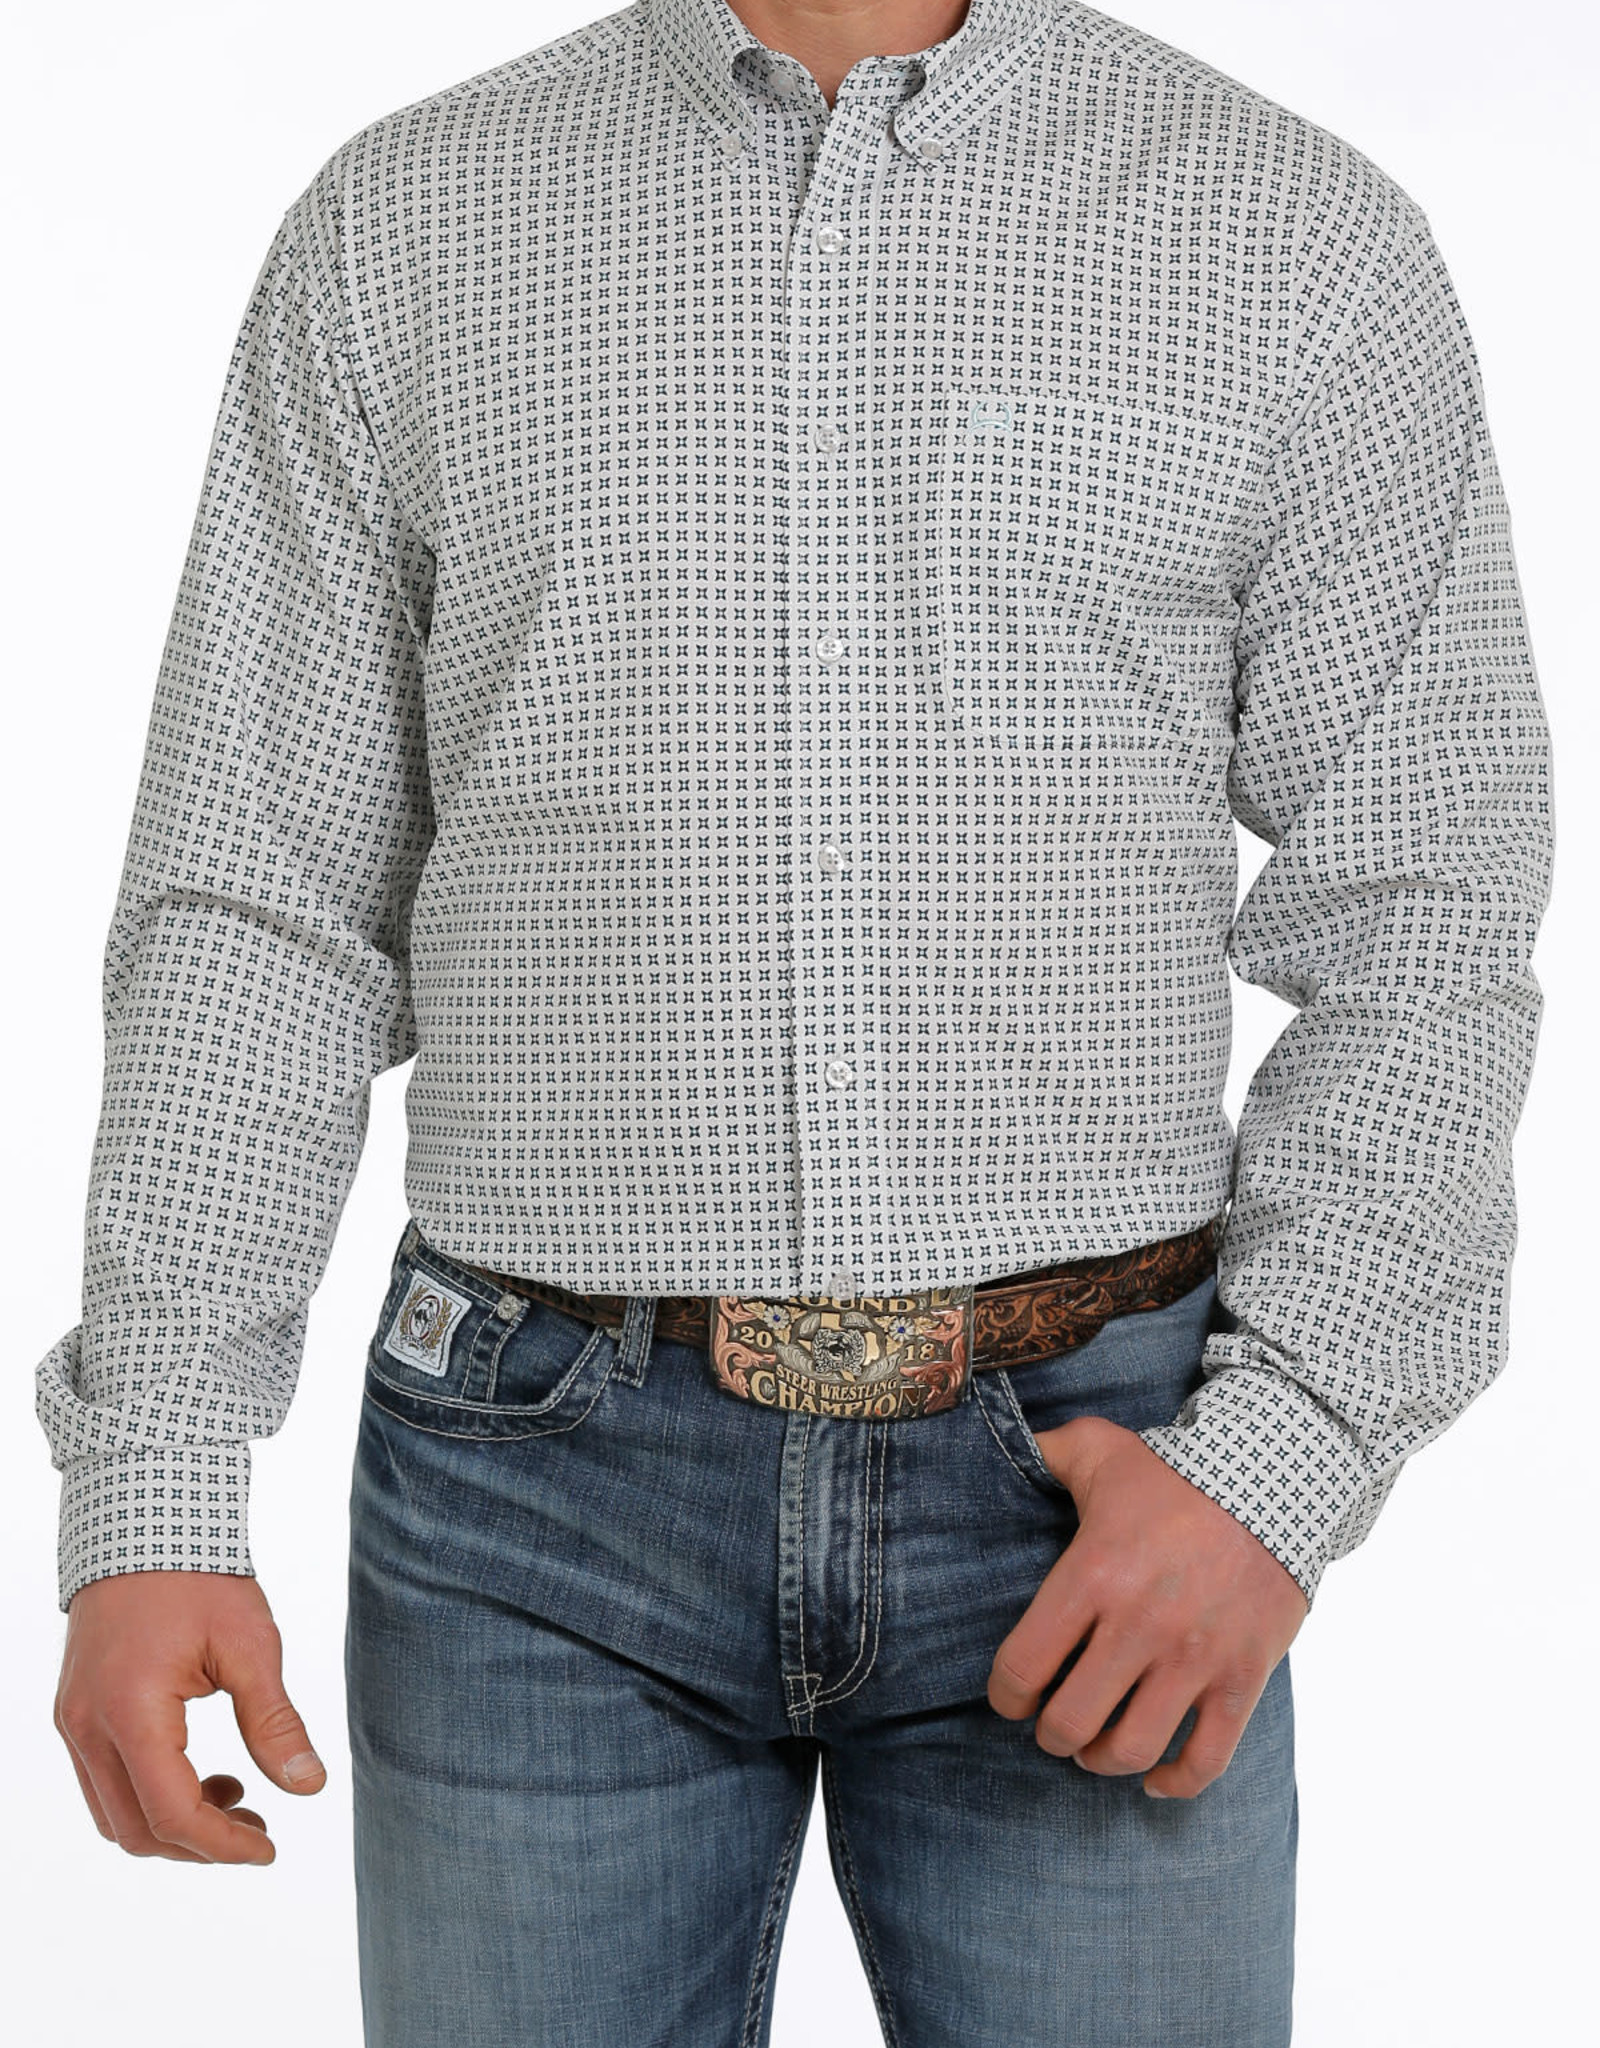 Cinch Mens Cinch Long Sleeve Light Grey Teal Print Arena Flex Western Button Shirt